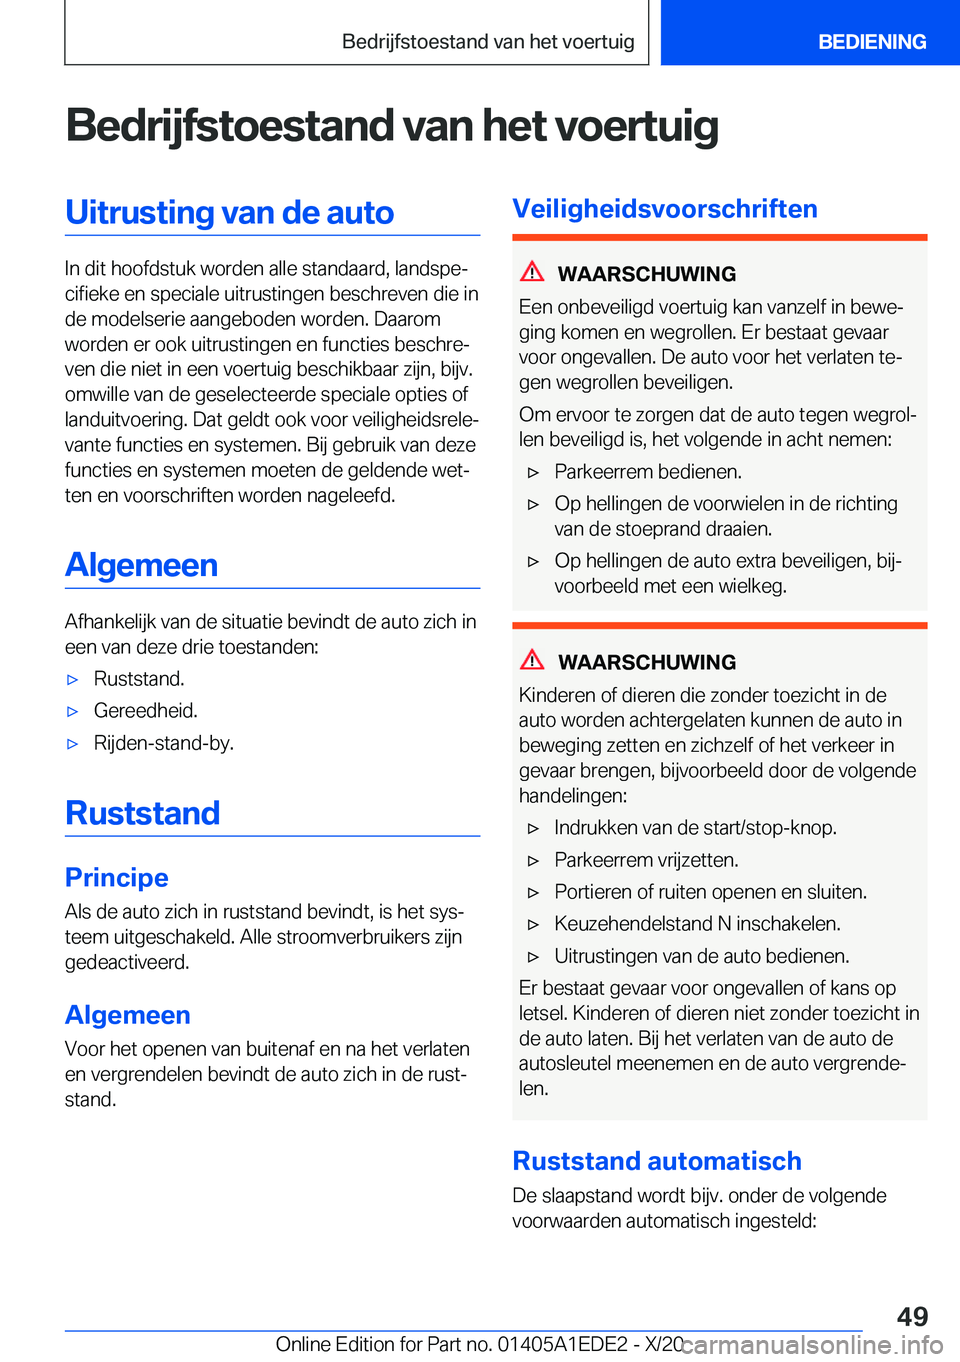 BMW 8 SERIES CONVERTIBLE 2021  Instructieboekjes (in Dutch) �B�e�d�r�i�j�f�s�t�o�e�s�t�a�n�d��v�a�n��h�e�t��v�o�e�r�t�u�i�g�U�i�t�r�u�s�t�i�n�g��v�a�n��d�e��a�u�t�o
�I�n��d�i�t��h�o�o�f�d�s�t�u�k��w�o�r�d�e�n��a�l�l�e��s�t�a�n�d�a�a�r�d�,��l�a�n�d�